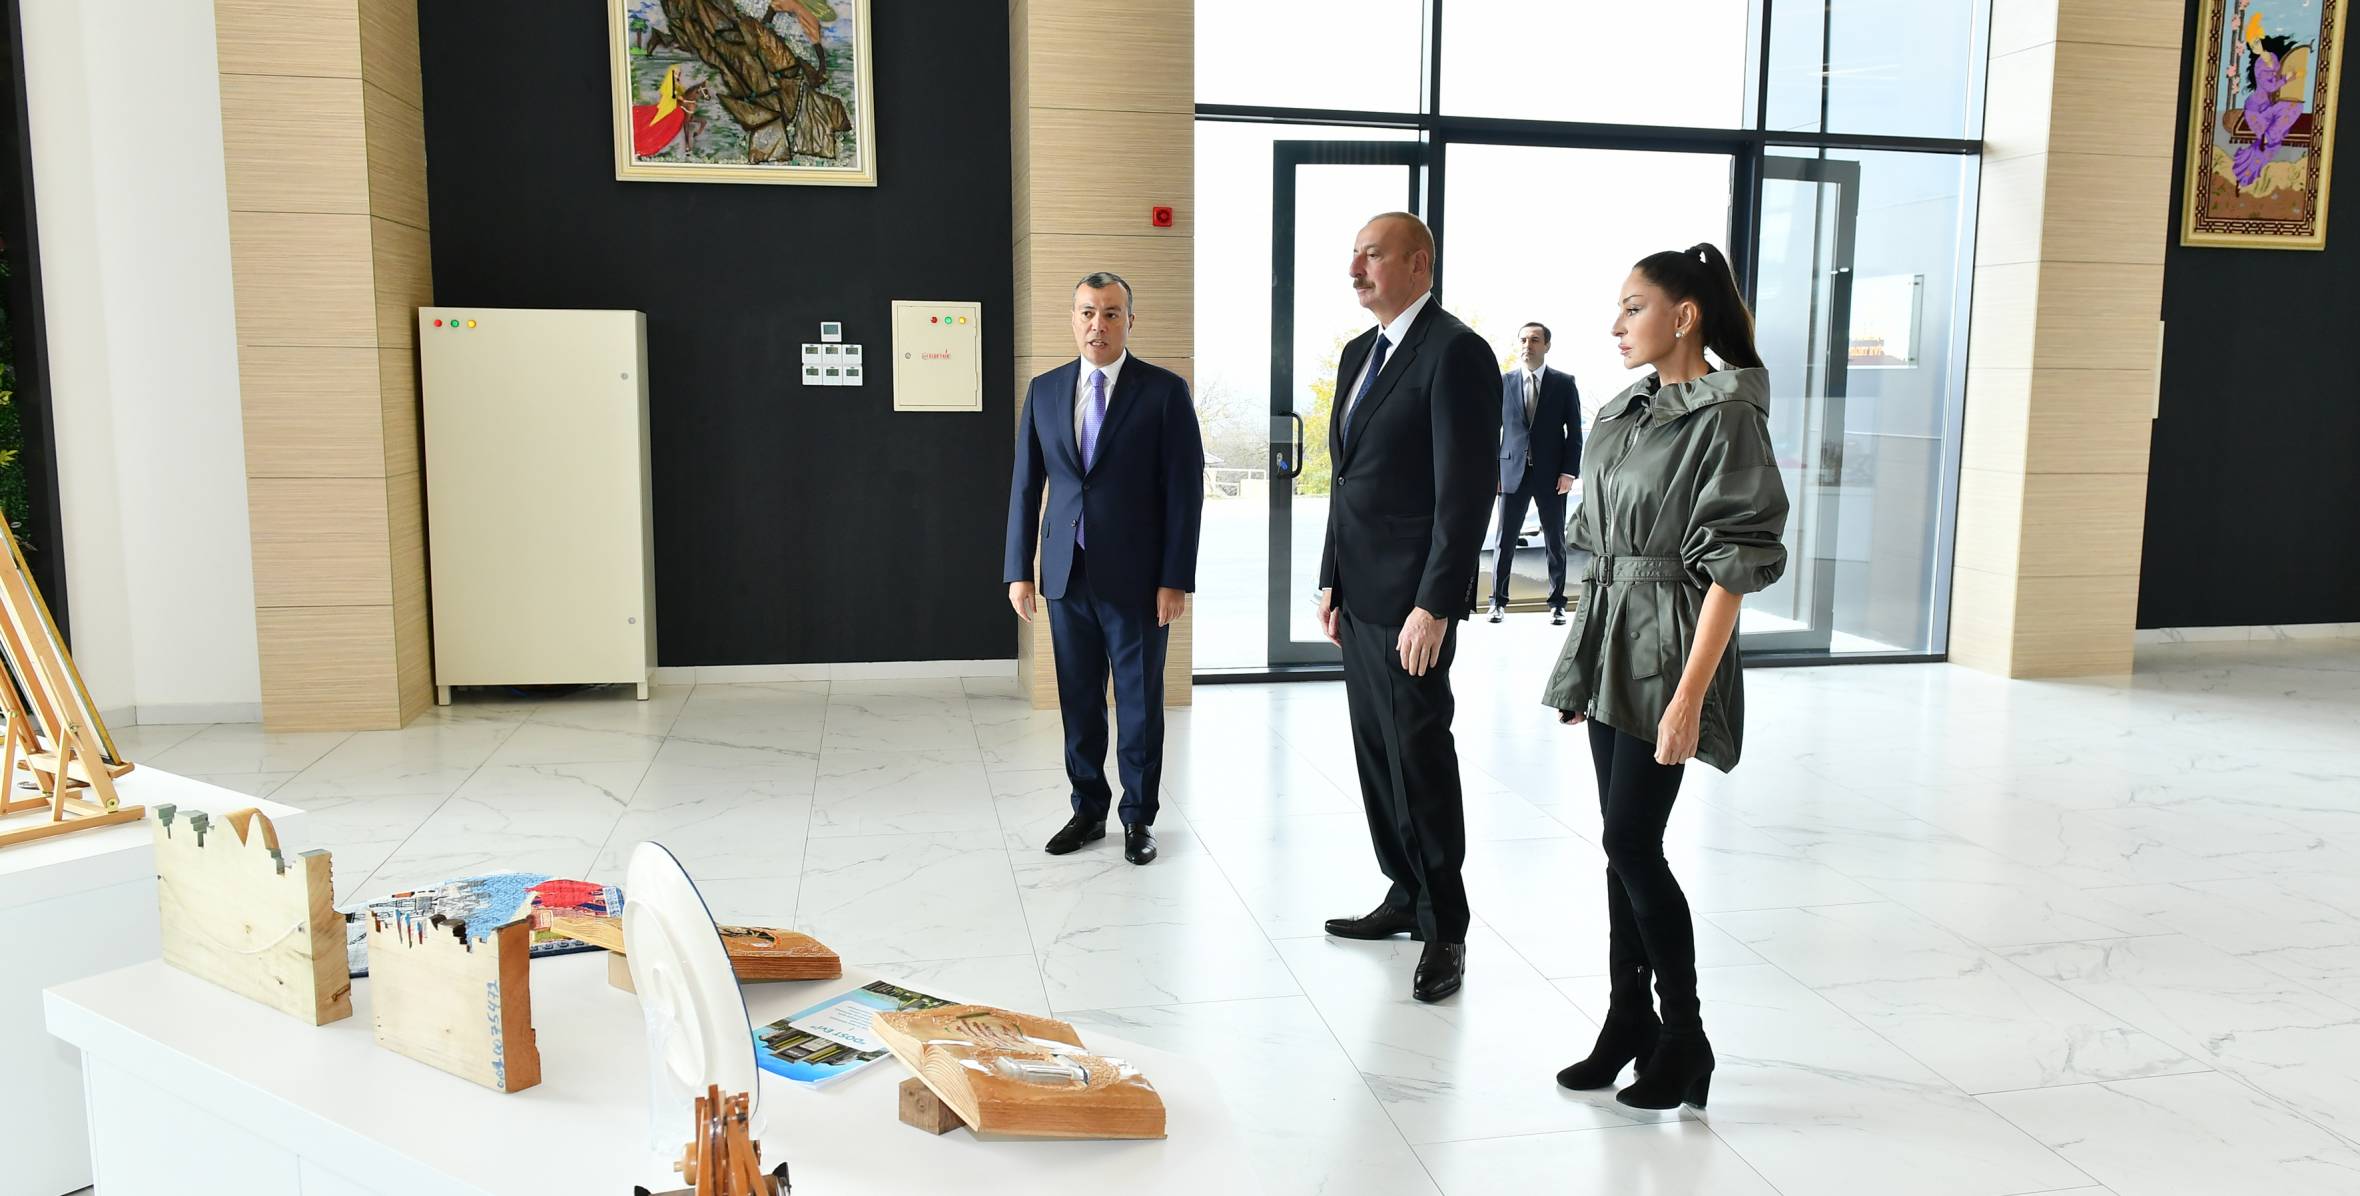 Ильхам Алиев и первая леди Мехрибан Алиева приняли участие в открытии филиала DOST EVİ Центра инклюзивного развития и творчества DOST в Исмаиллы 